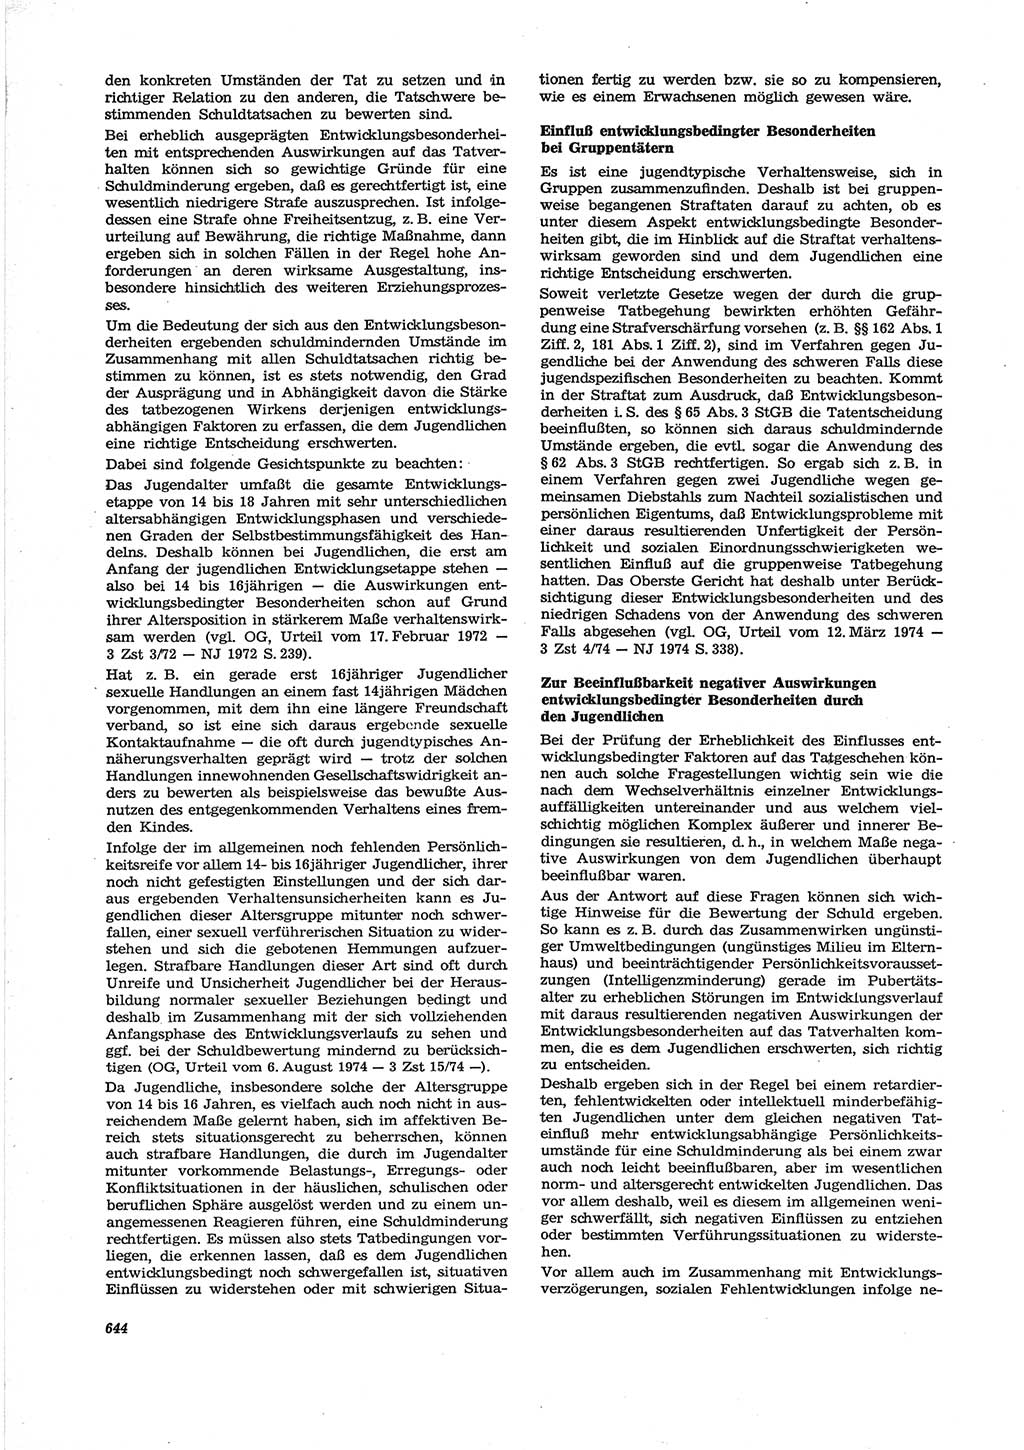 Neue Justiz (NJ), Zeitschrift für Recht und Rechtswissenschaft [Deutsche Demokratische Republik (DDR)], 28. Jahrgang 1974, Seite 644 (NJ DDR 1974, S. 644)